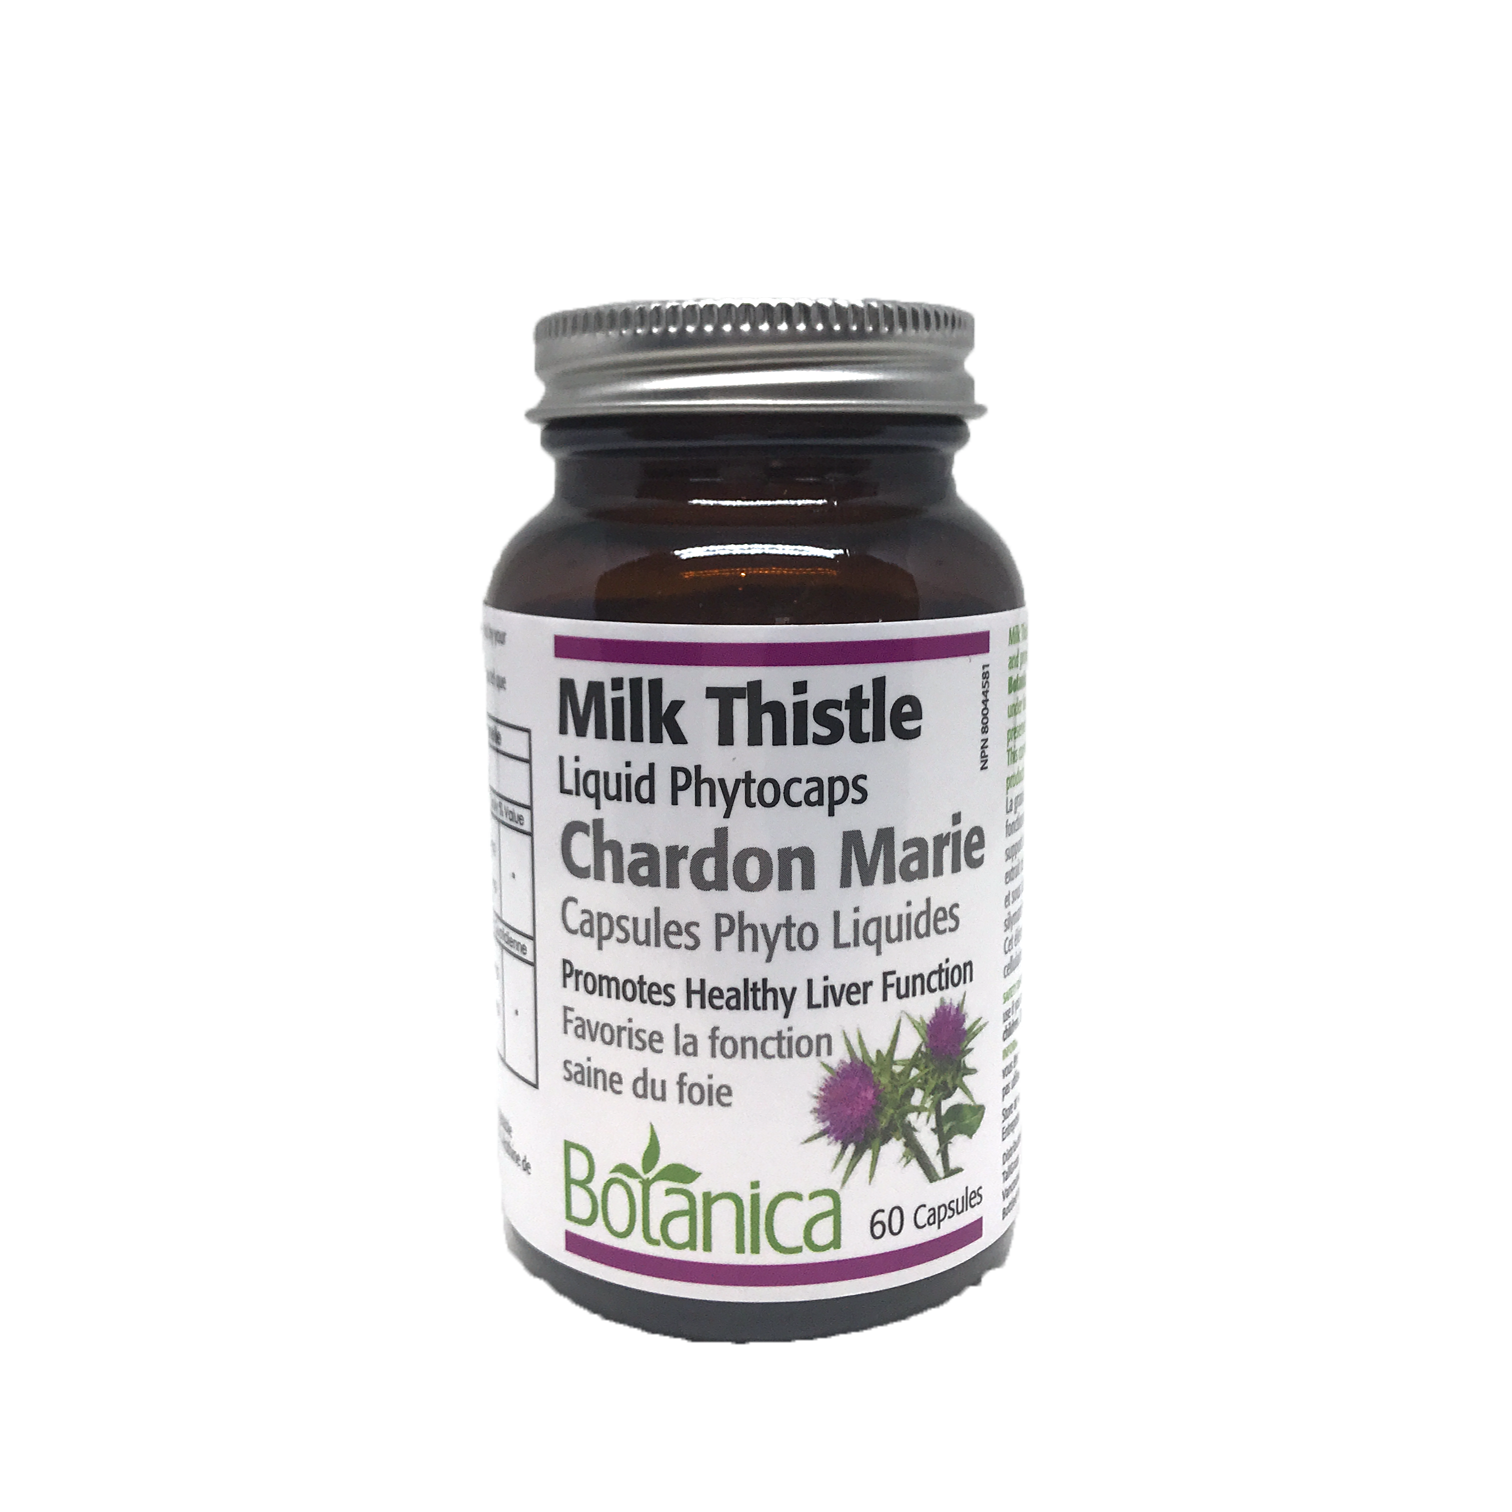 Botanica Milk Thistle 60 Liquid Phytocapsules